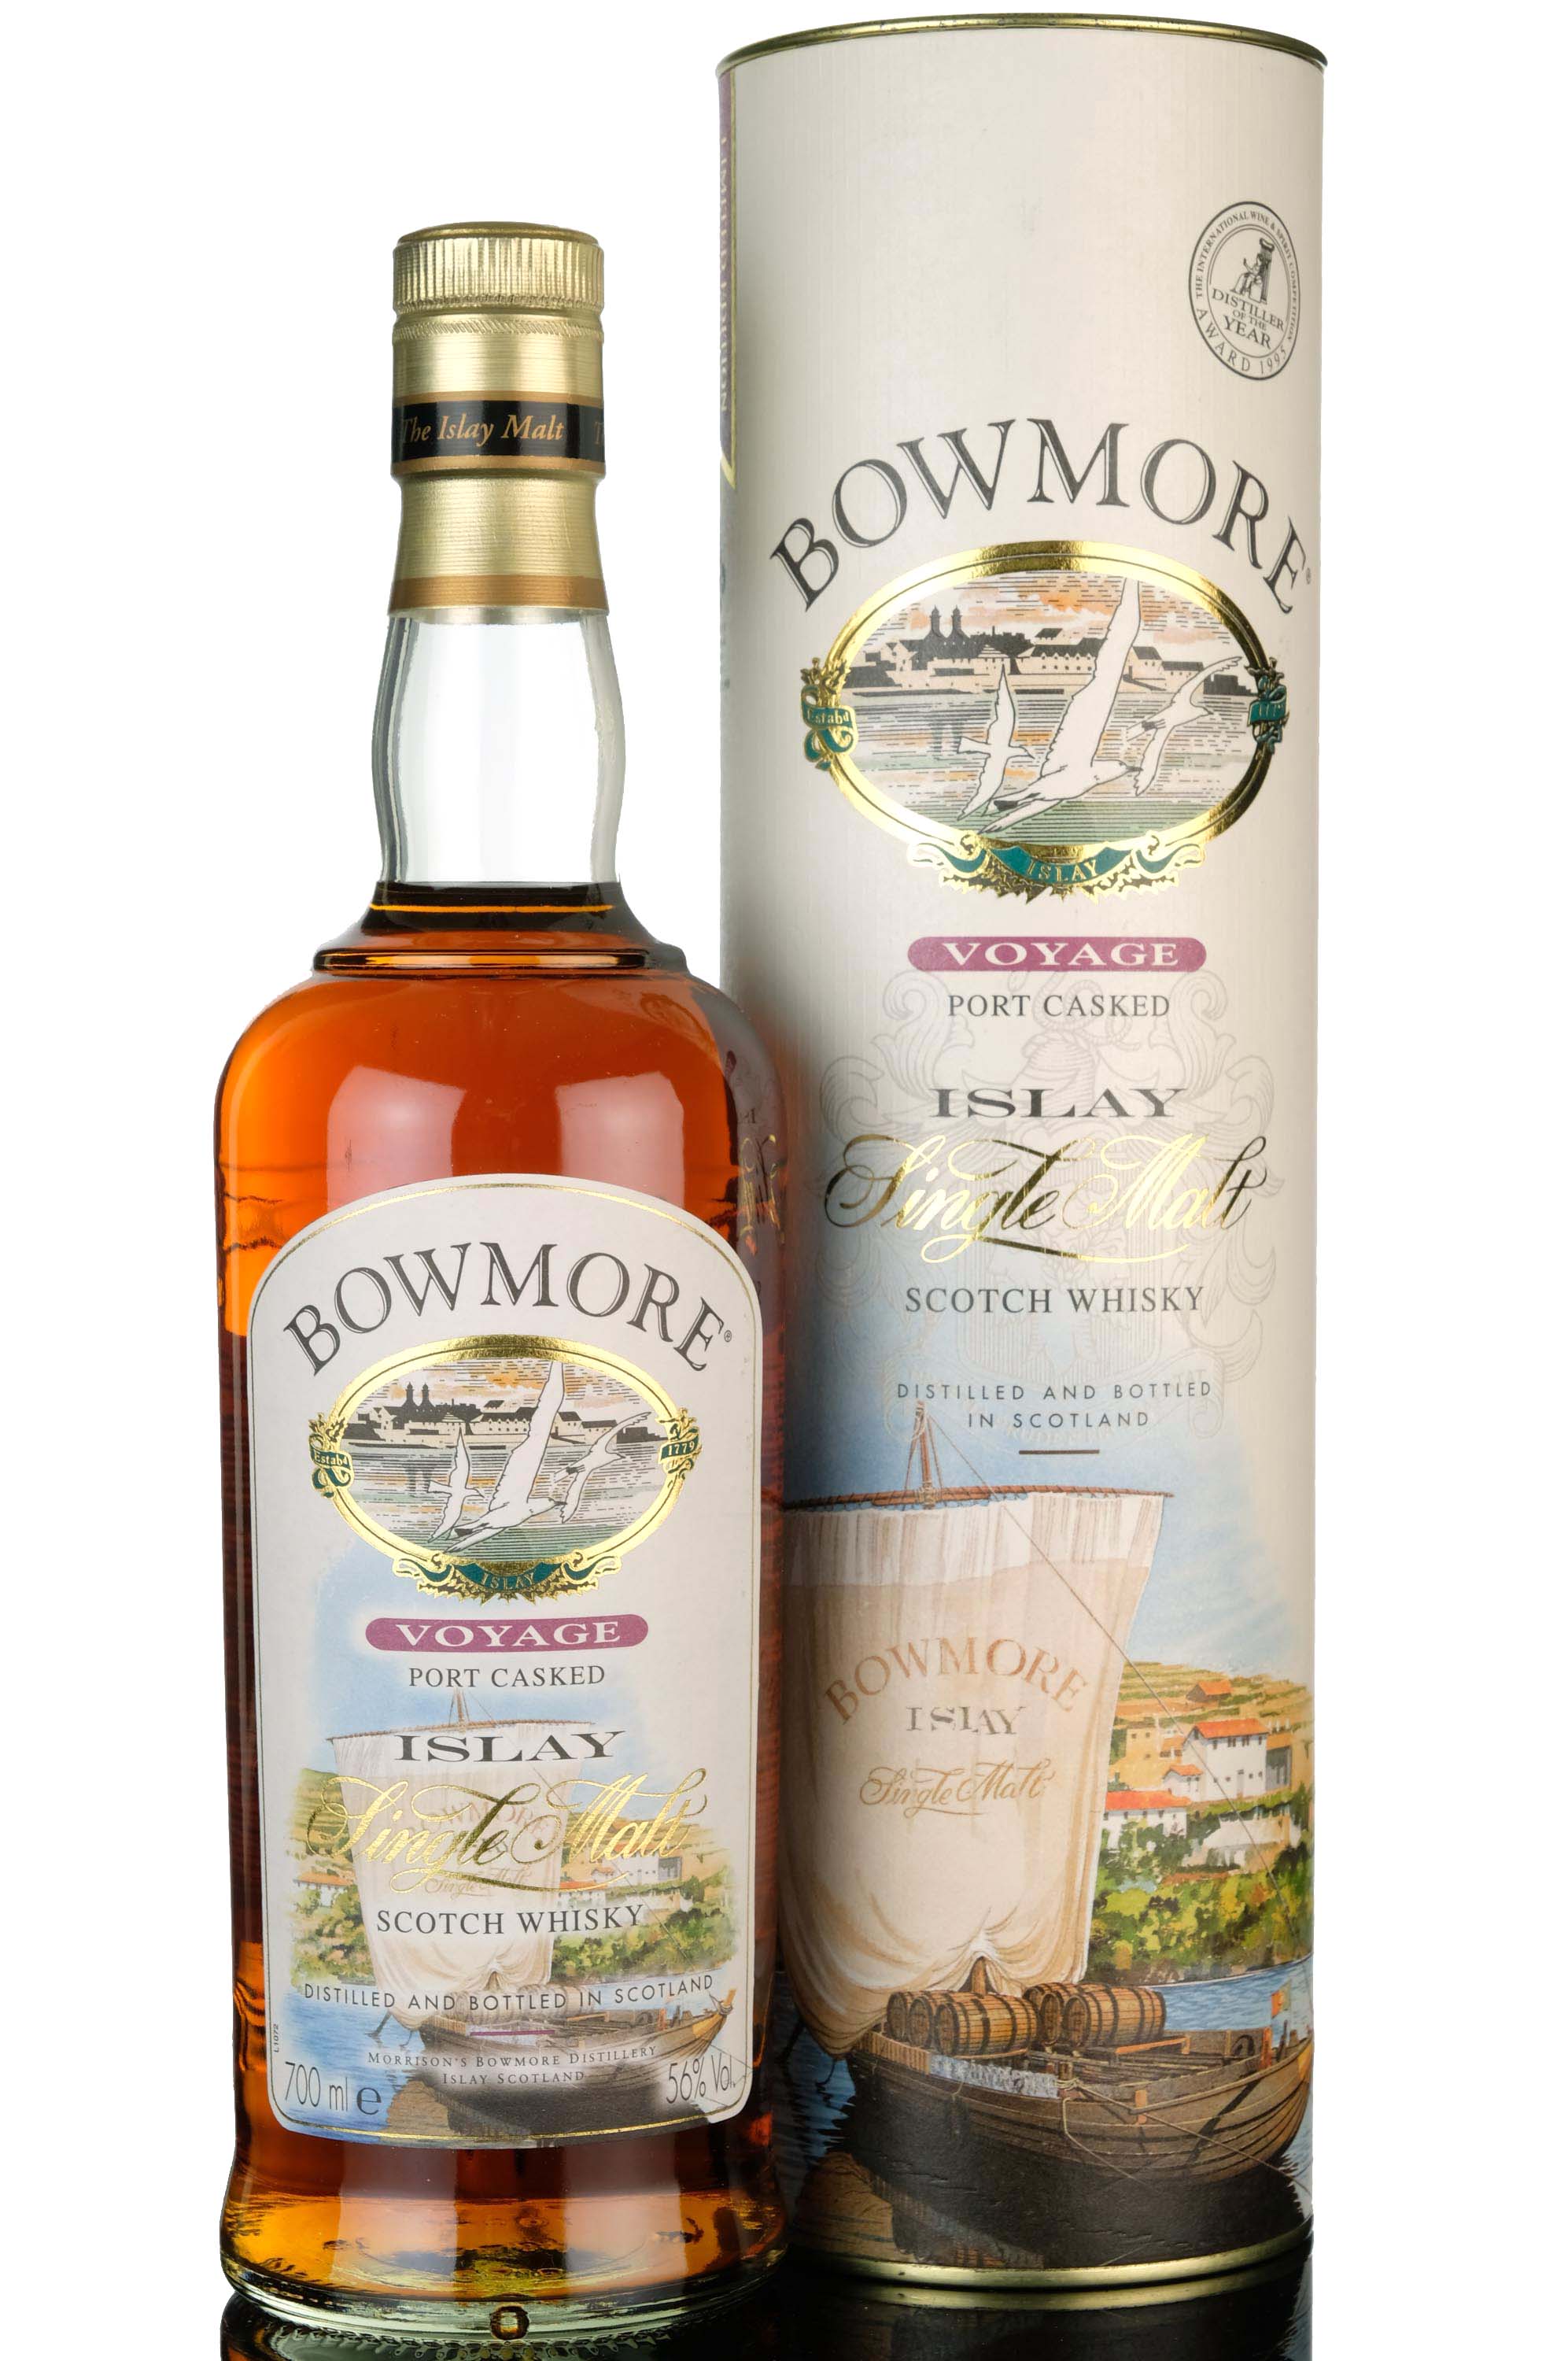 Bowmore Voyage